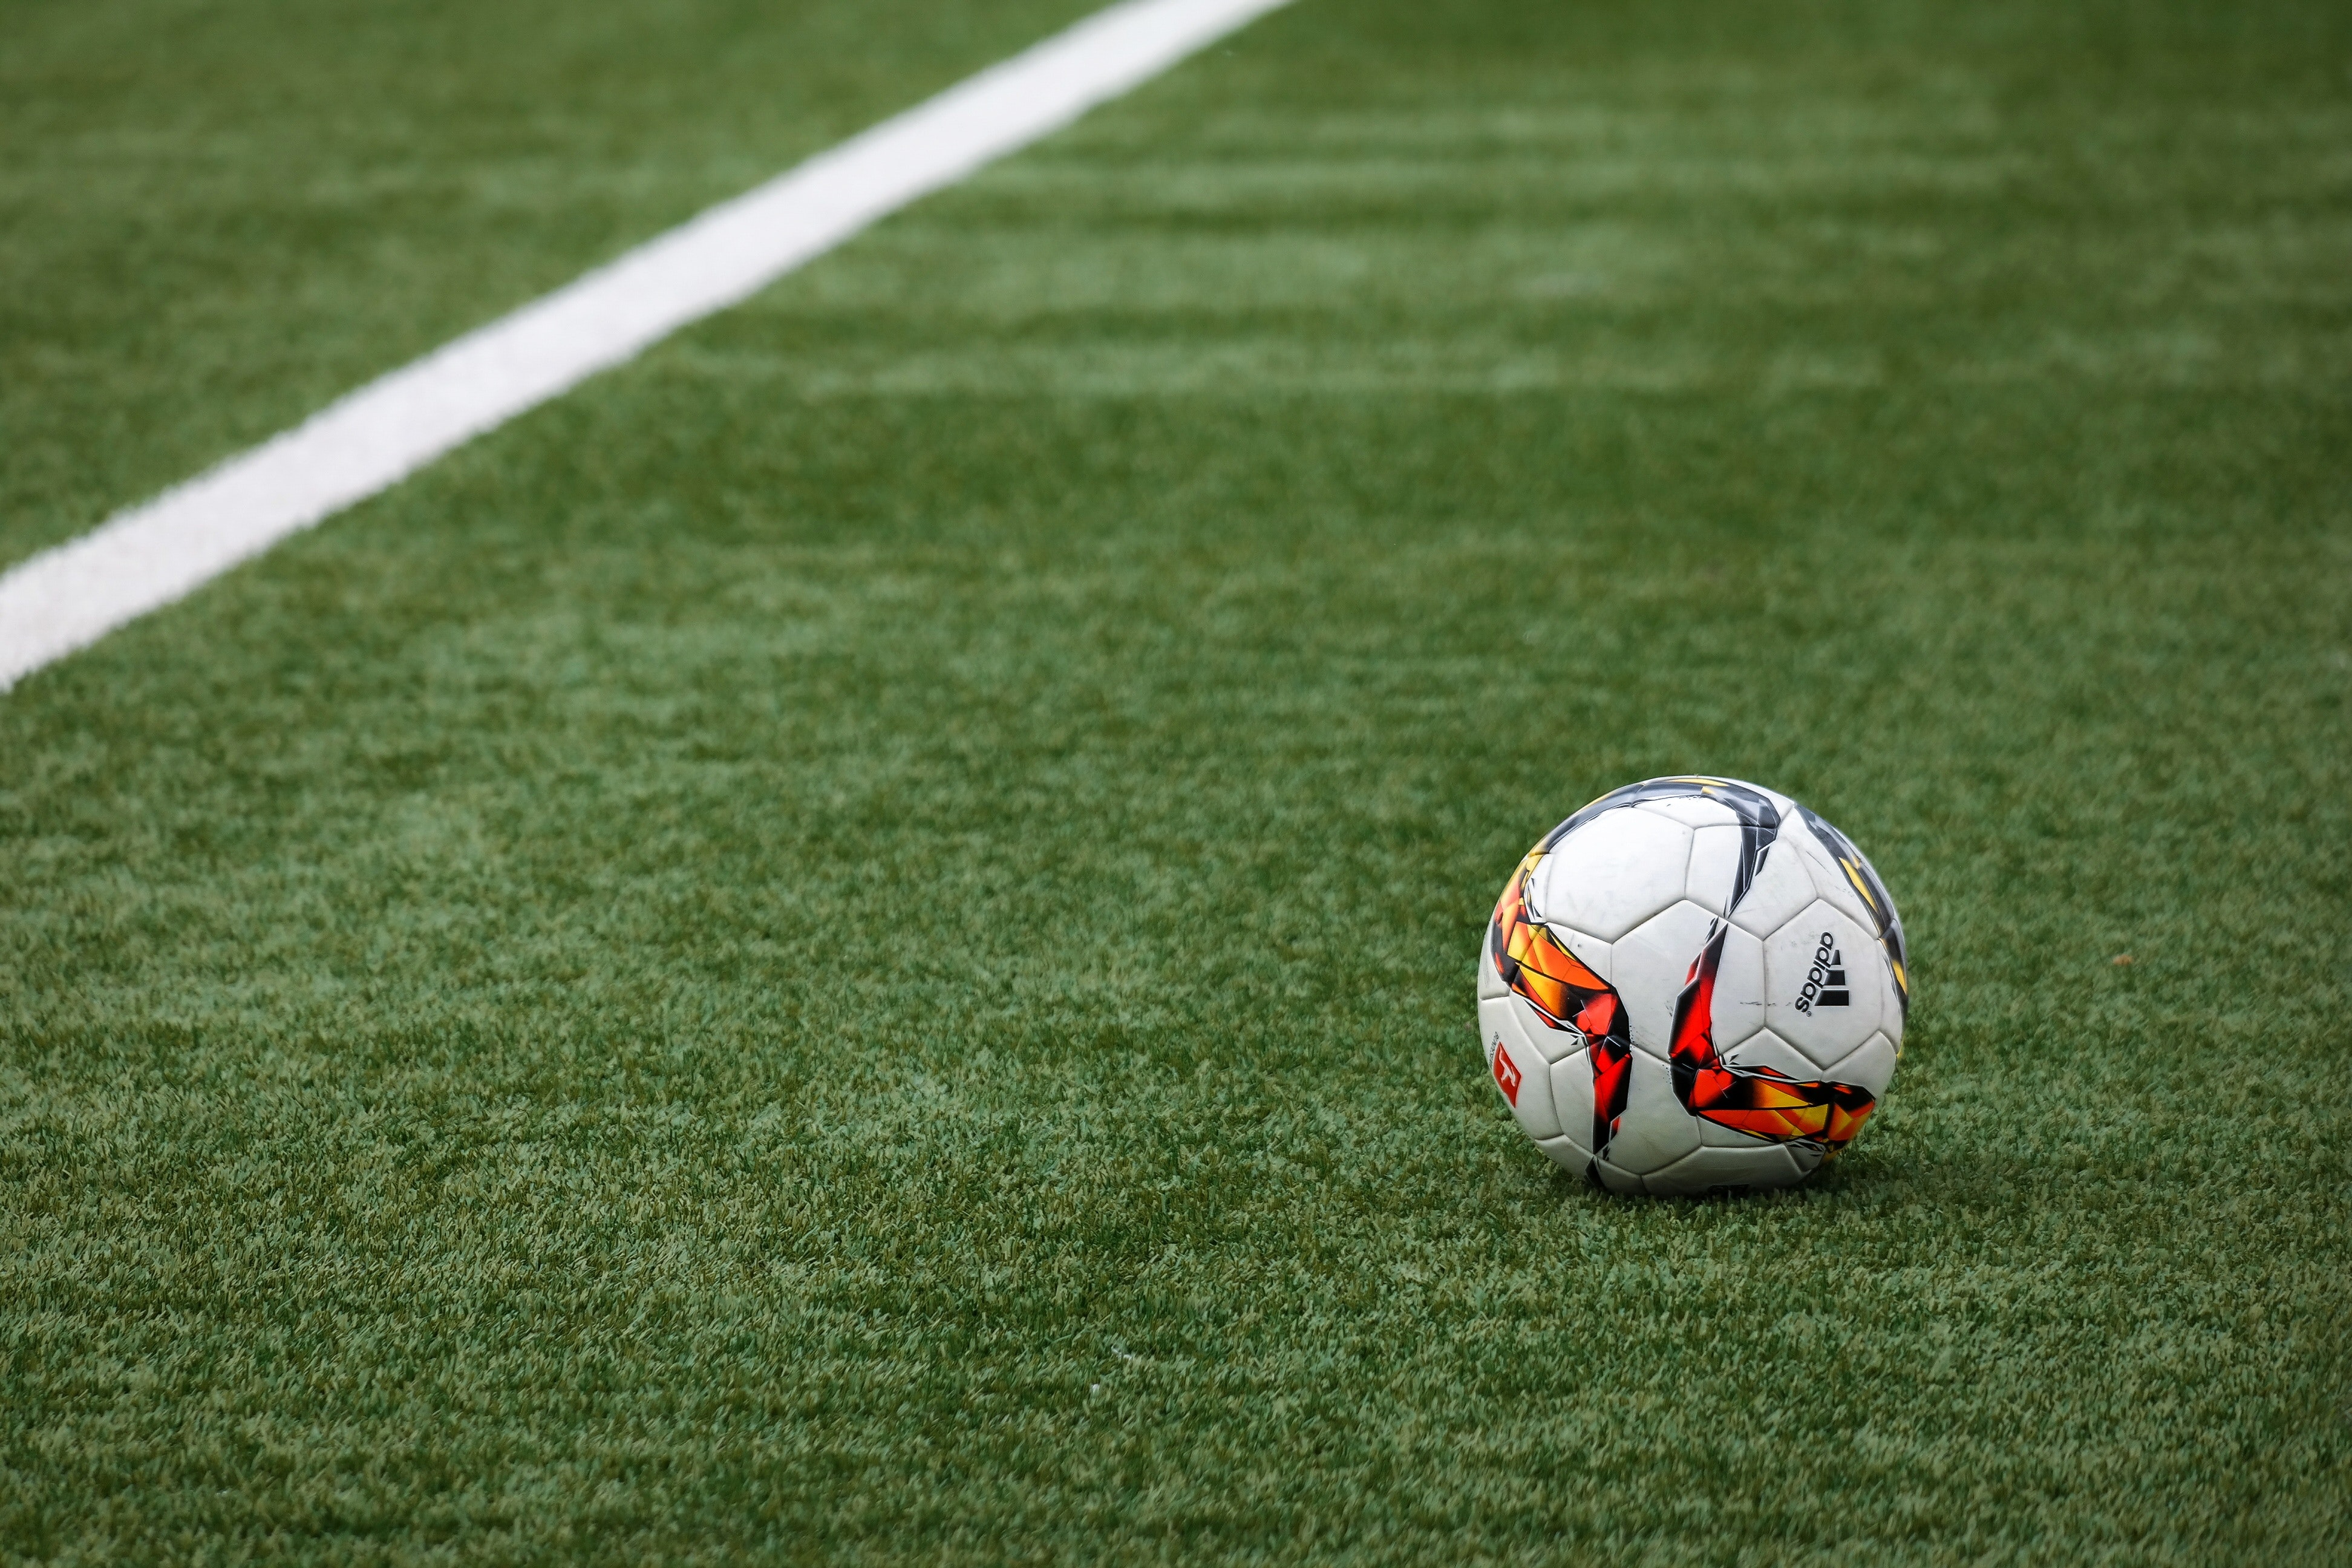 Soccer ball on a field of green grass